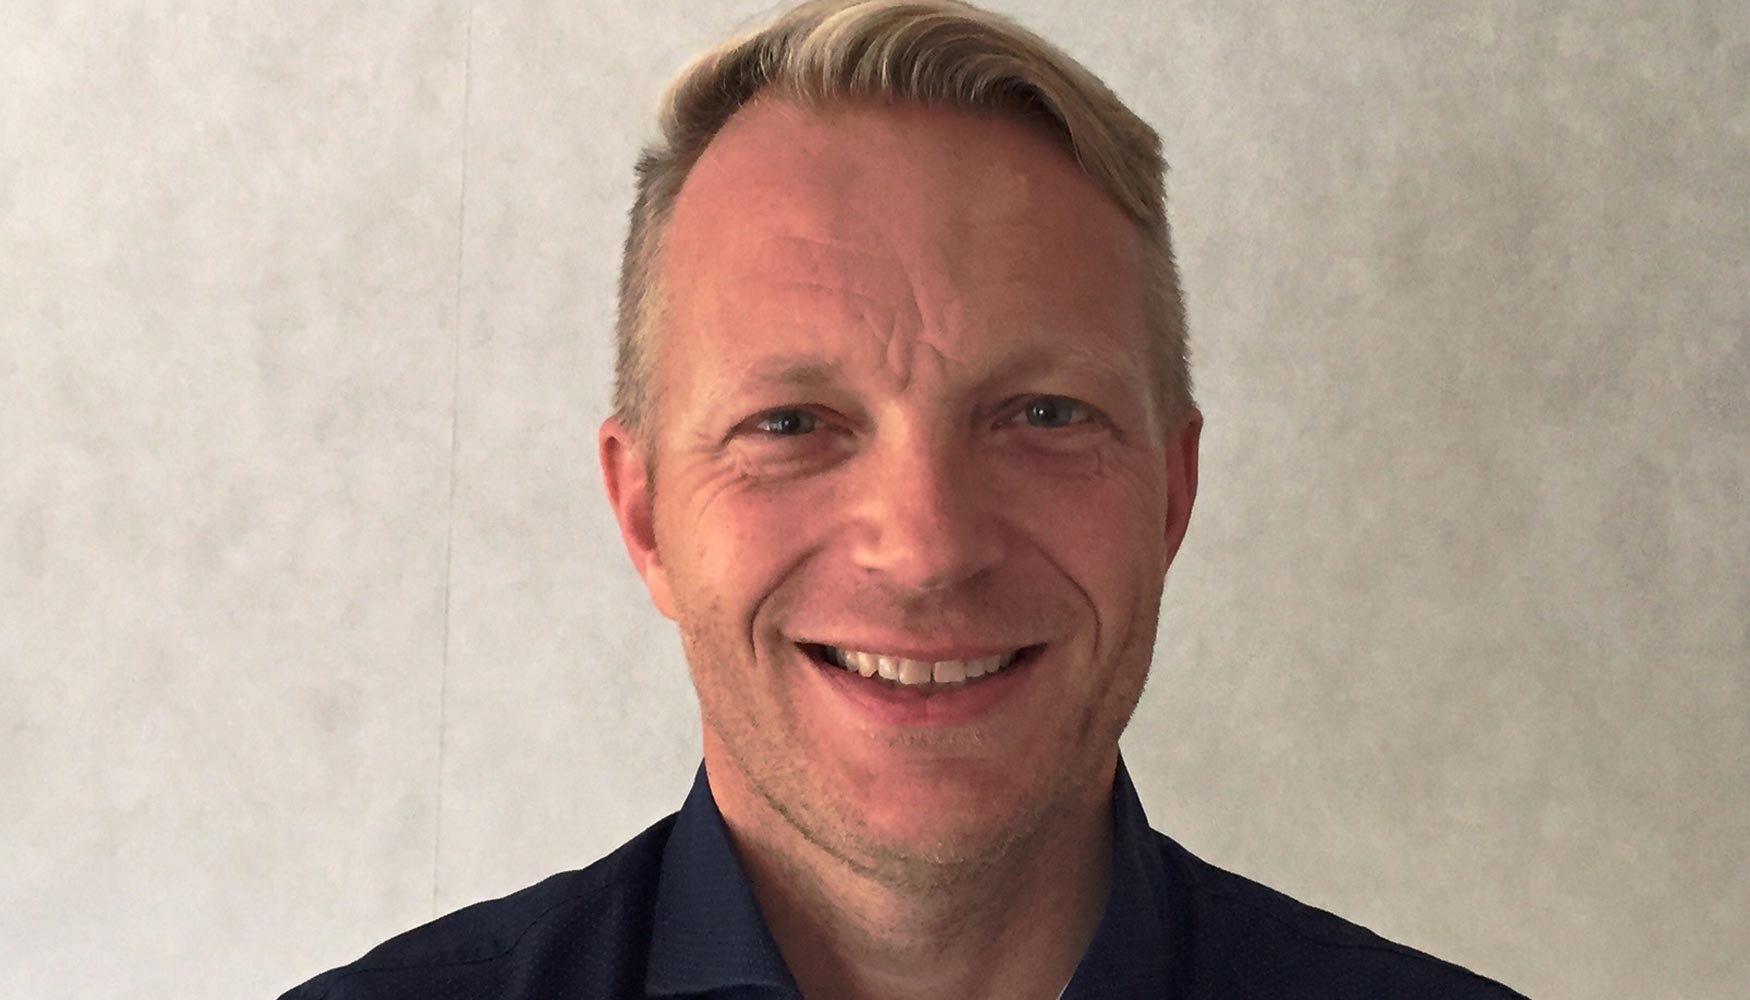 Jacco de Kluijver, nuevo vicepresidente de ventas y marketing de Terex AWP Emear